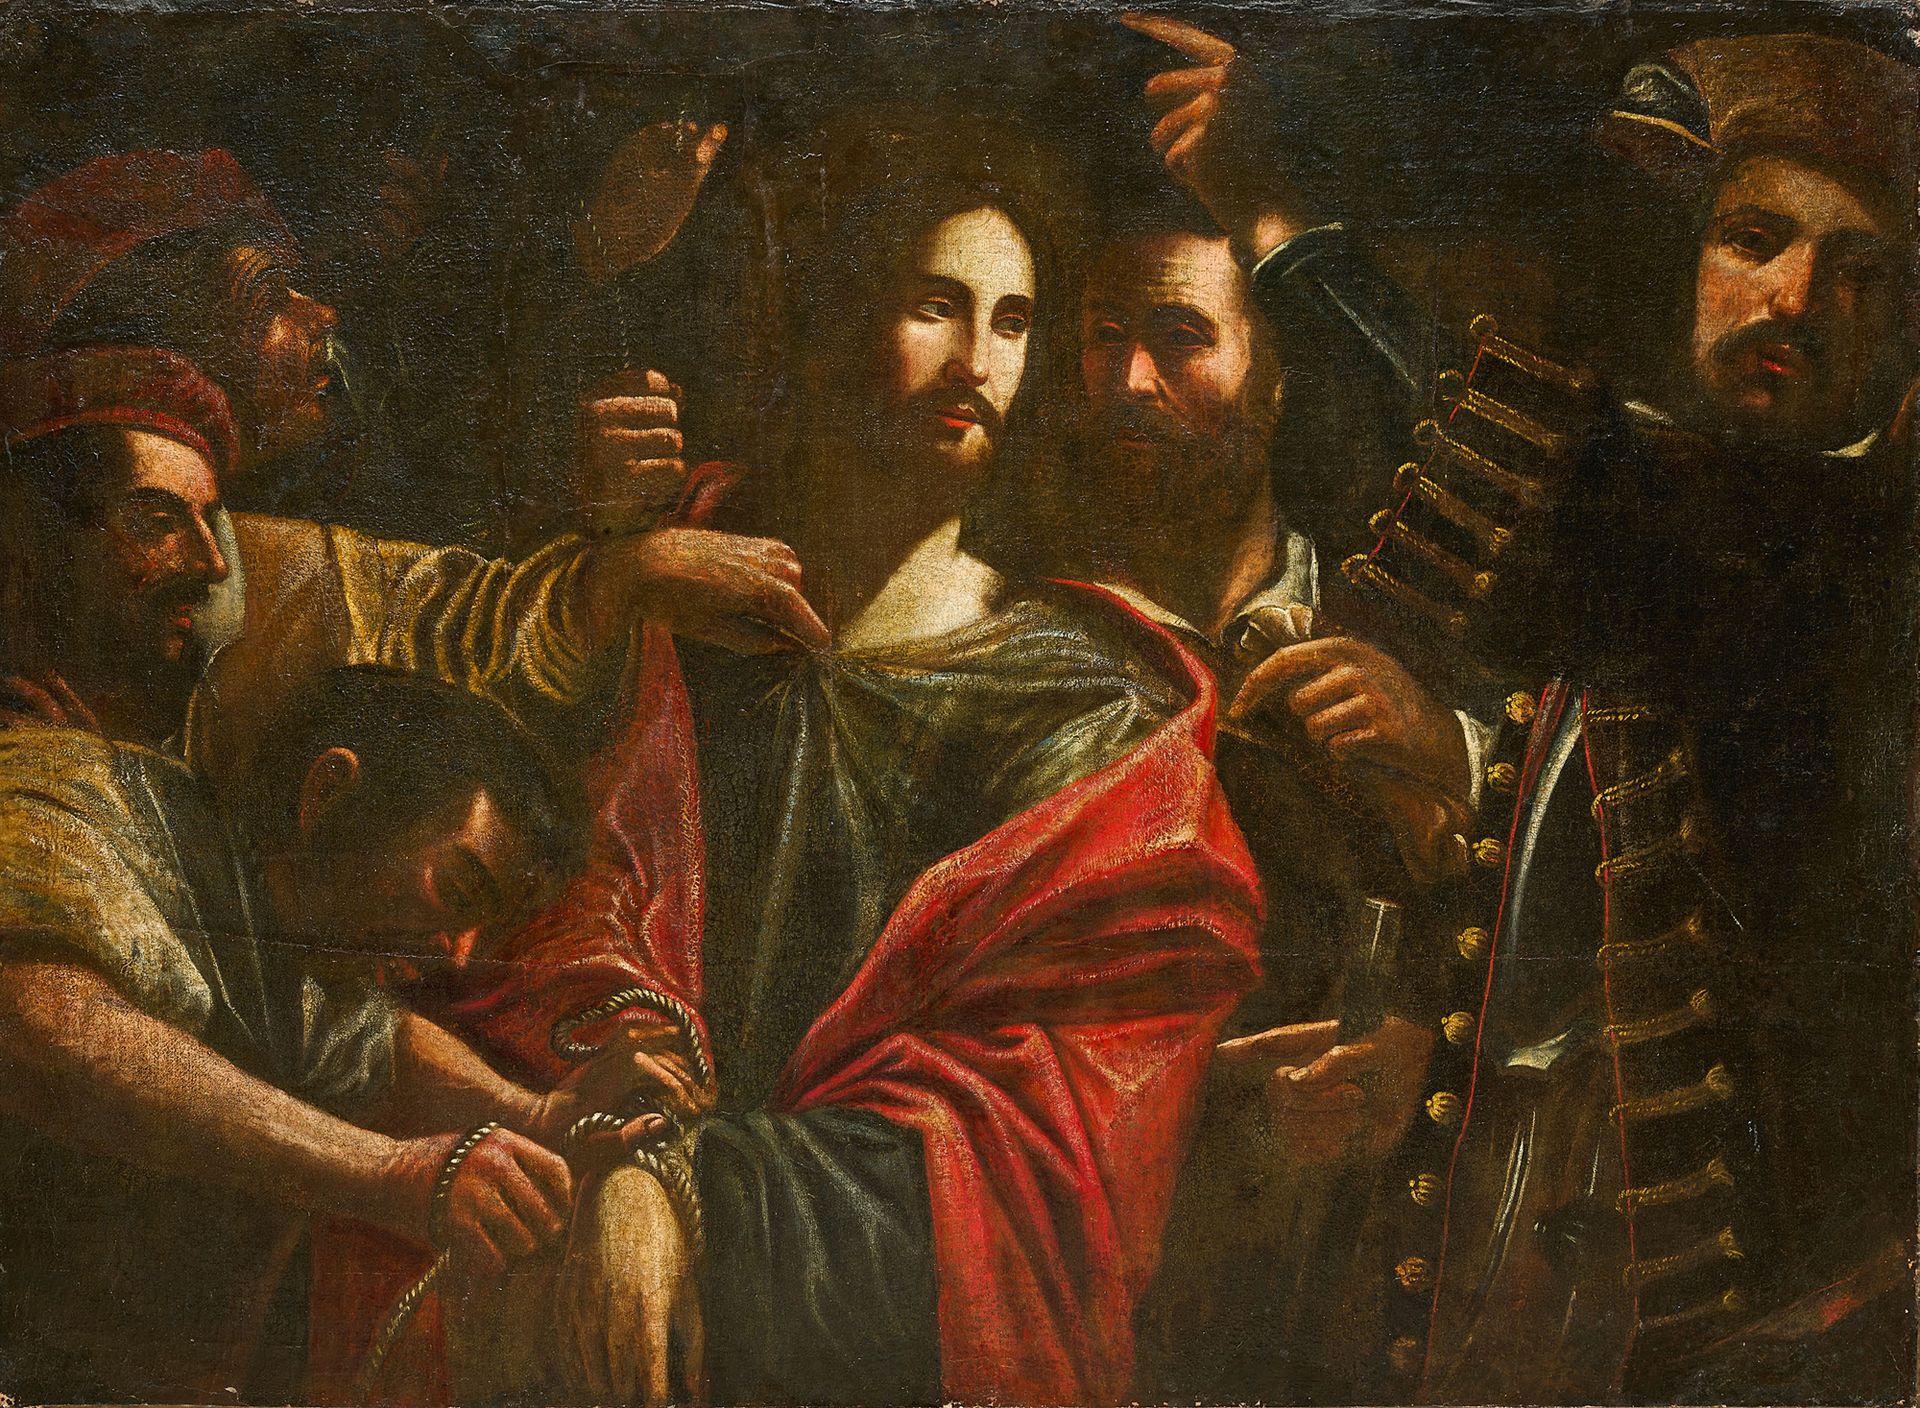 ATTRIBUÉ À GREGORIO PRETI TAVERNA, 1603 - 1672 基督与士兵之间的纽带
布面油画 
95.5 x 131 cm